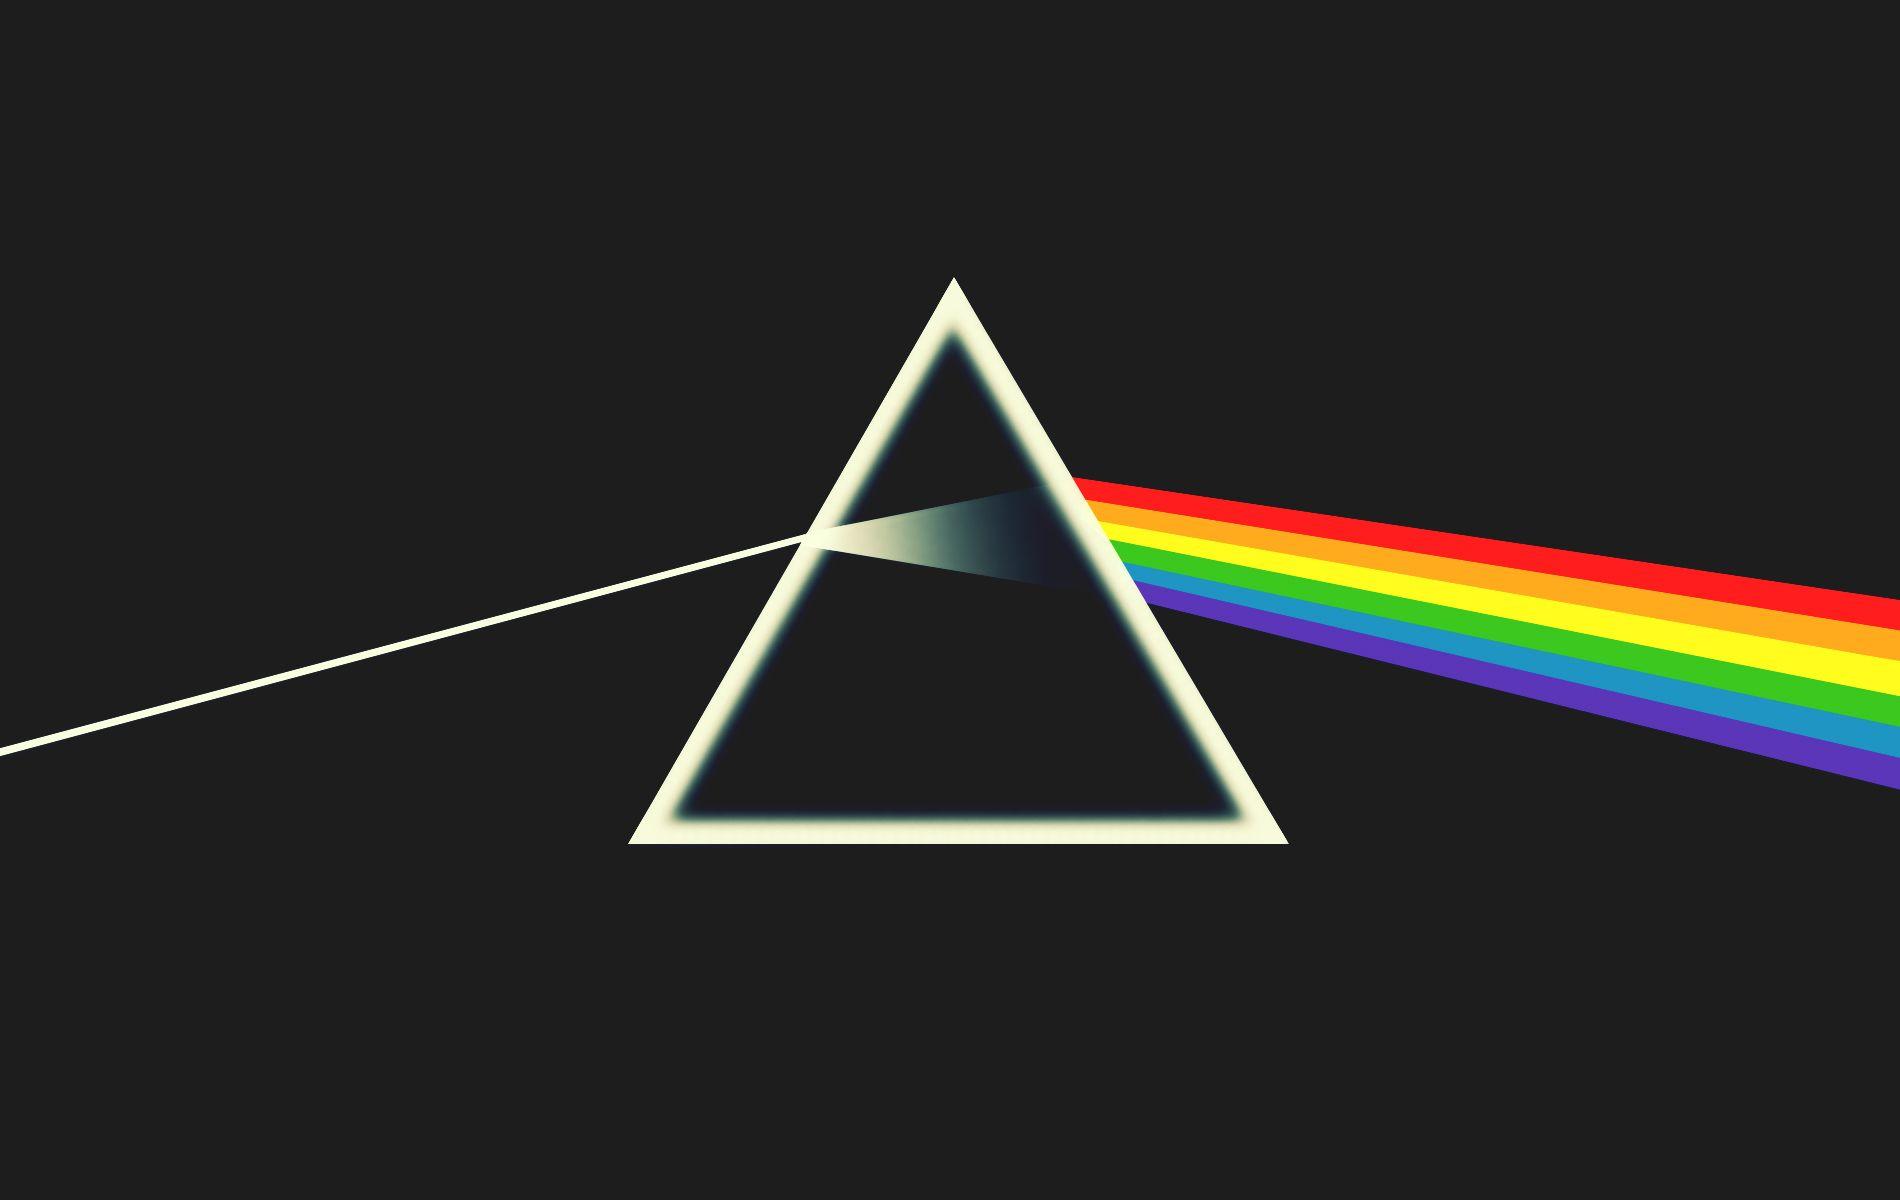 In Gallery: Pink Floyd Album Covers Wallpaper, 47 Pink Floyd Album